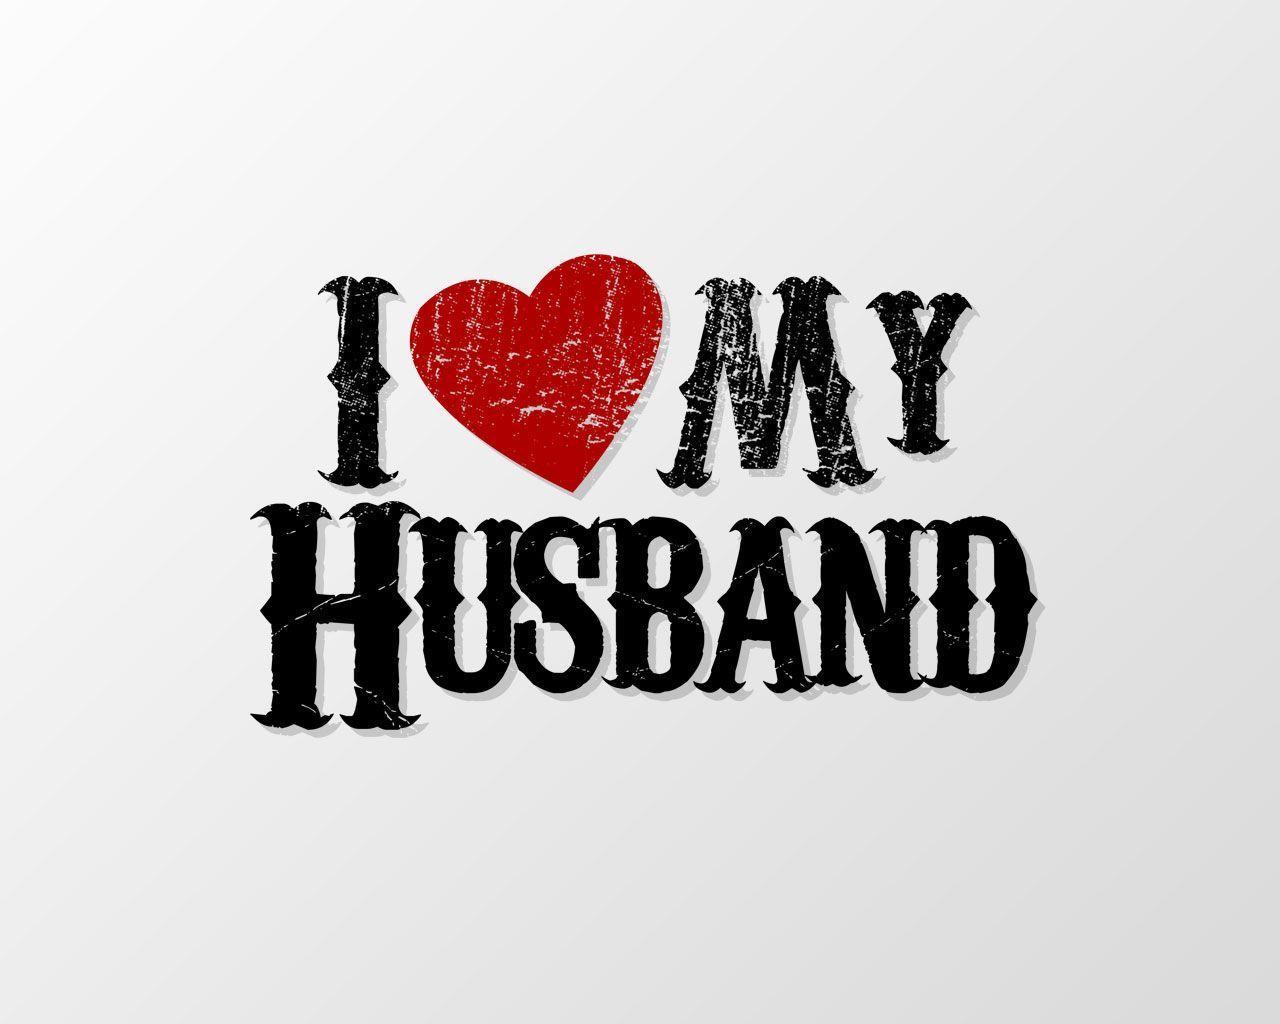 Husband Desktop Wallpaper Free Husband Desktop Background